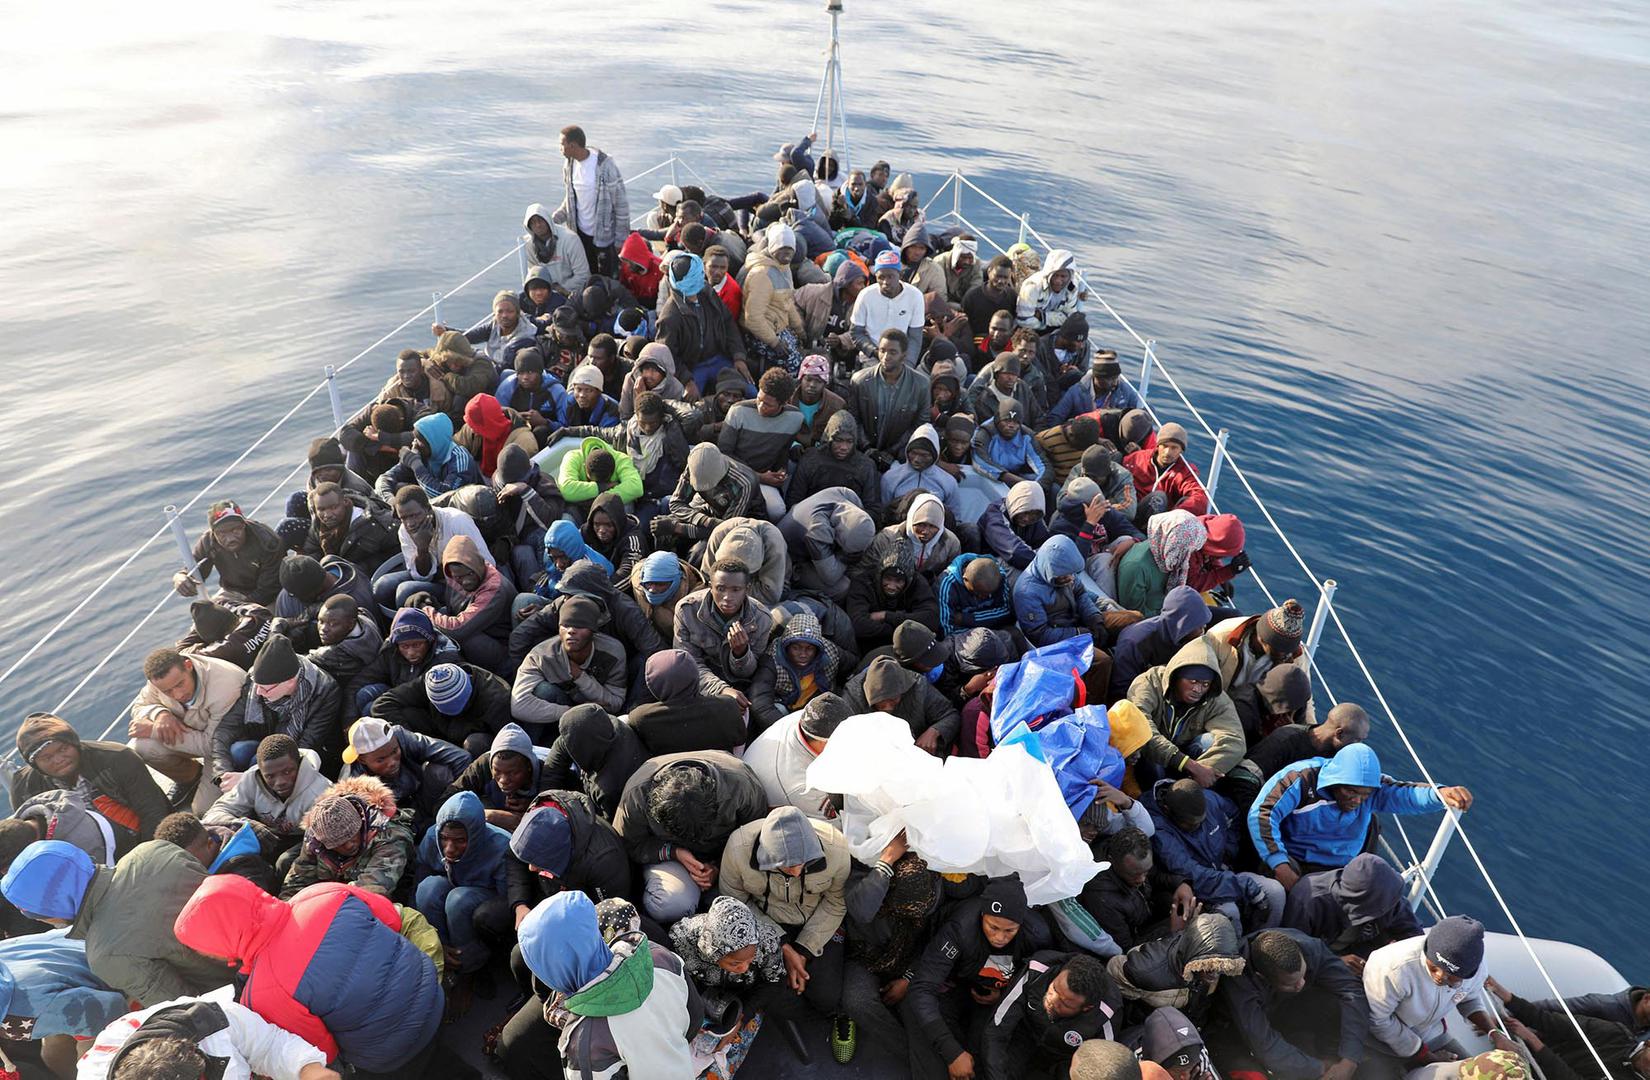  مهاجرون على متن قارب "حرس السواحل الليبي" في البحر المتوسط على الساحل الليبي، 15 كانون الثاني/يناير 2018.